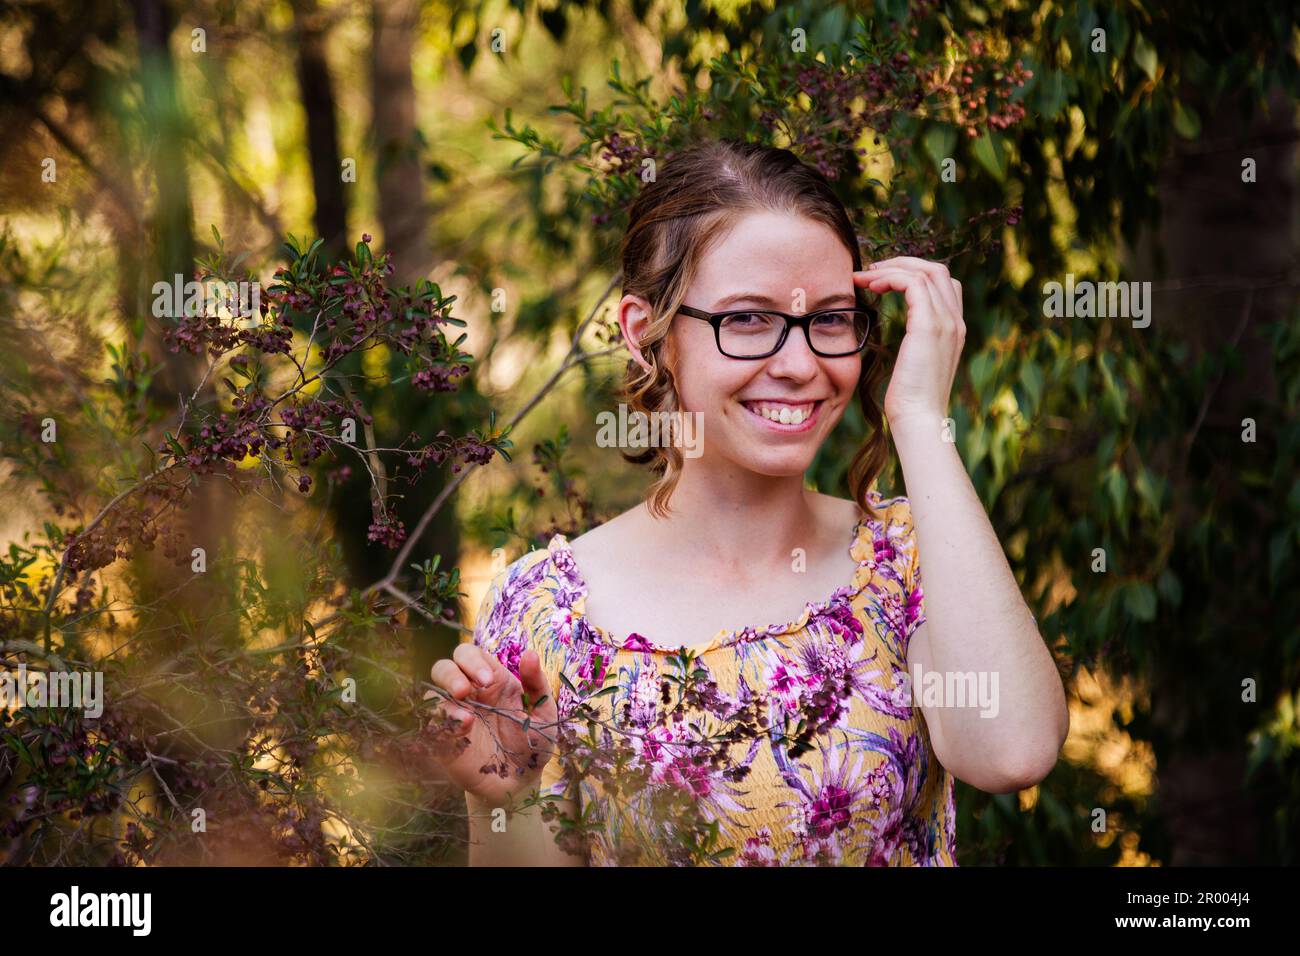 Ein Mädchen mit Brille im australischen Busch, das vor der Kamera lächelt Stockfoto